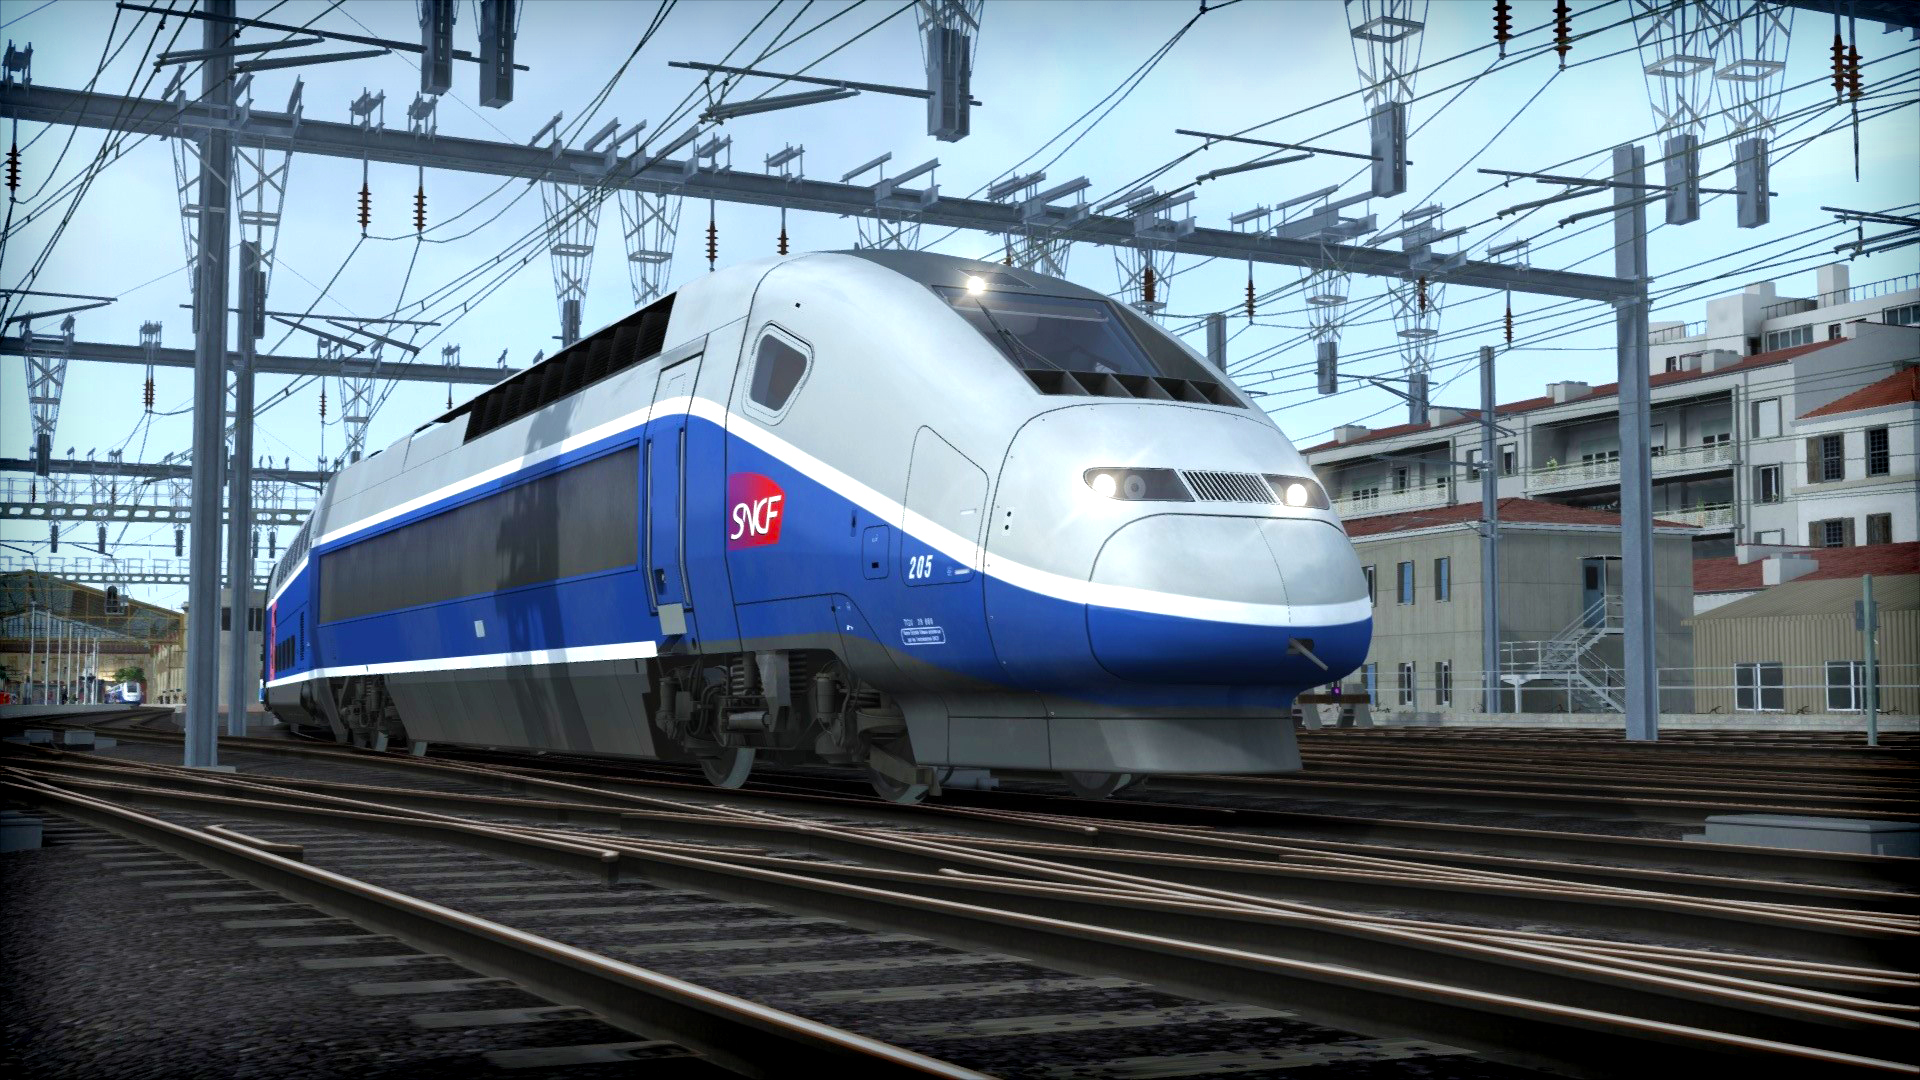 Train Simulator 2017 - Images & Screenshots | GameGrin1920 x 1080